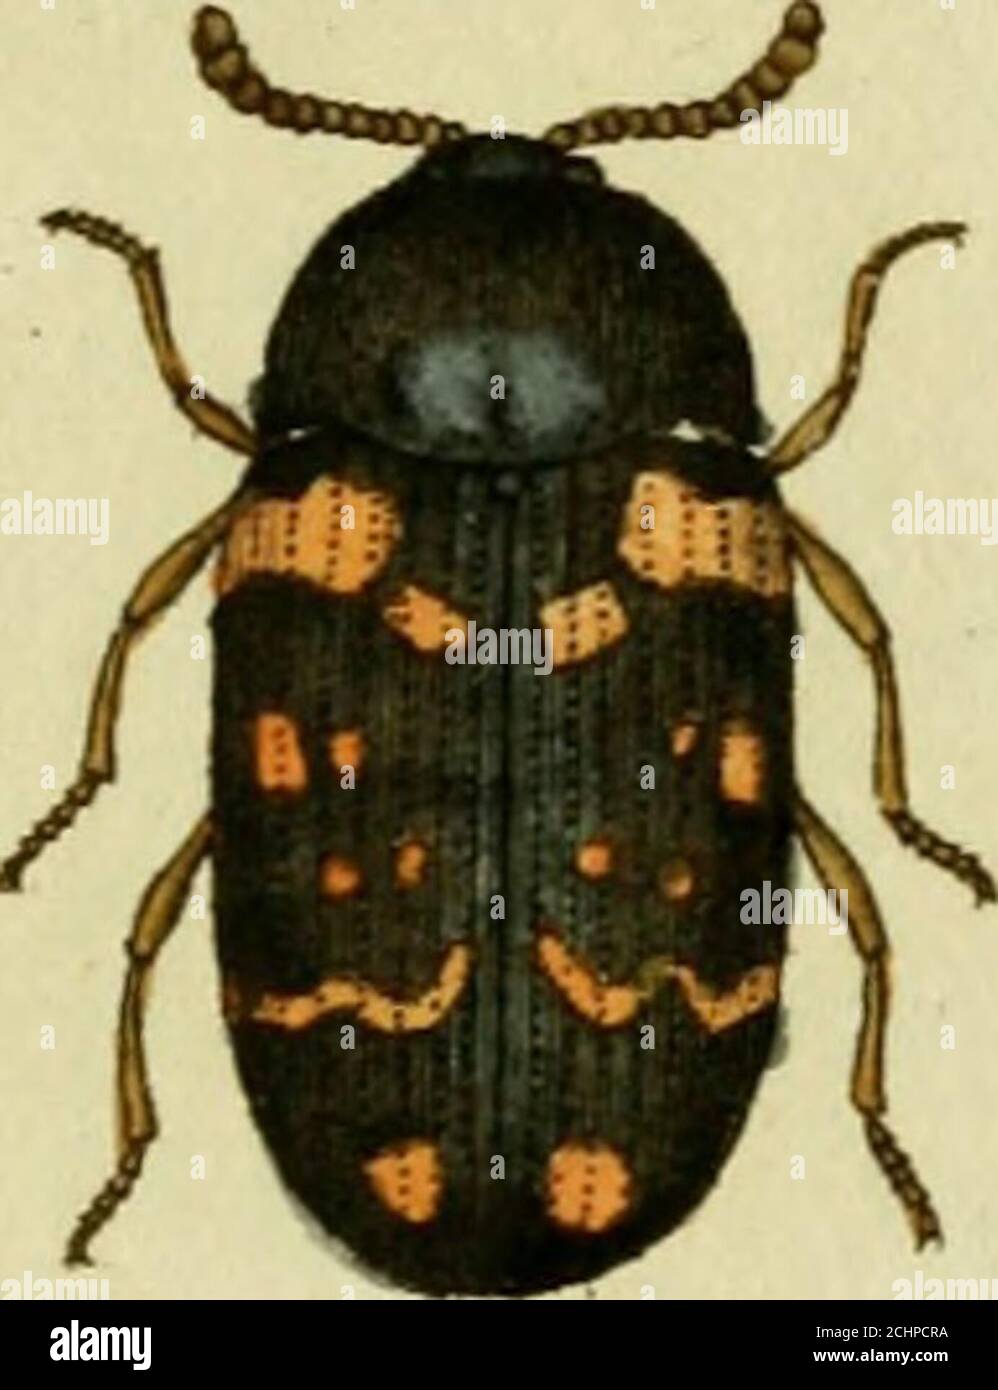 . Favnae insectorvm Germanicae initia, oder, Deutschlands Insecten . i. p. 497.Ips maculata. Fahric. Mant. Ins. T. I. n. 8- P45«Tritoma. Geoffr. Ins. T. I. n. 1. p. 335. tab. 6. fig. 2. e. f.Sil-pJioides holeti. Herbst Archiv. 4tes Heft. n. 11. p.4i. tab. 2i. fig. LL Lebt in den Baumpilsen.a. Natürliche Grösse, b. Vergrössemng. c. Ein vergrössertes Fühlhorn, ) Wenn ich ehemals Mycetaphetgus durch Ameiseiijägcr- gab, so bitte ich nurzu glanbeu, dafs ich nicht übersetzen wollte, ich würde sonst wahrschein-lich FilzenfreJscr gesagt haben. Aber dies durfte ich denn doch auch nicht» Zwölftes Heft, Stock Photo